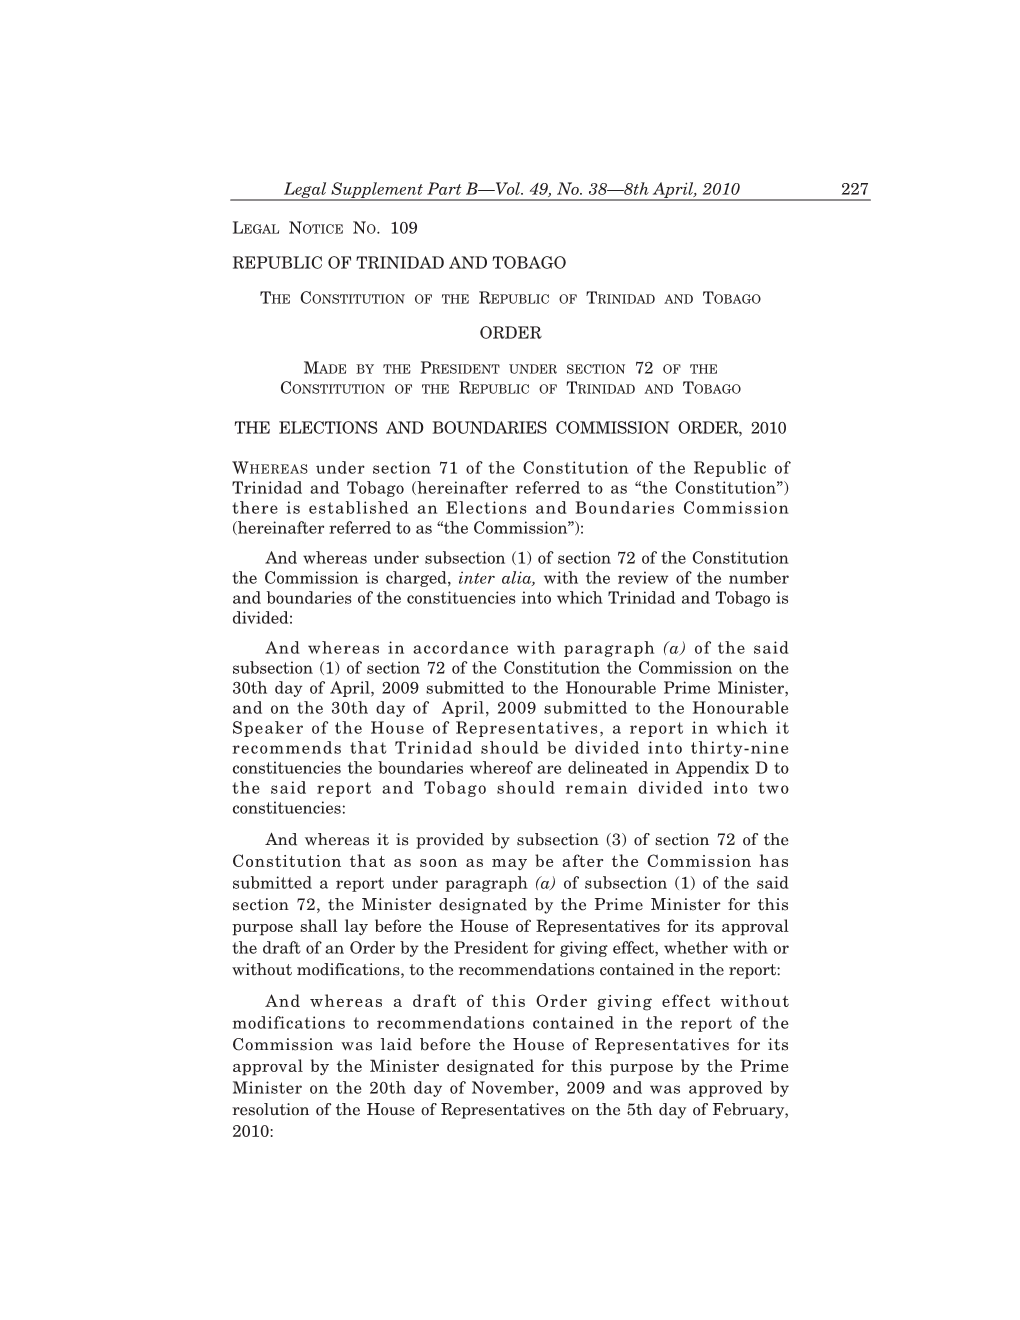 Legal Notice No. 109, Vol. 49. No. 38, 8Th April, 2010